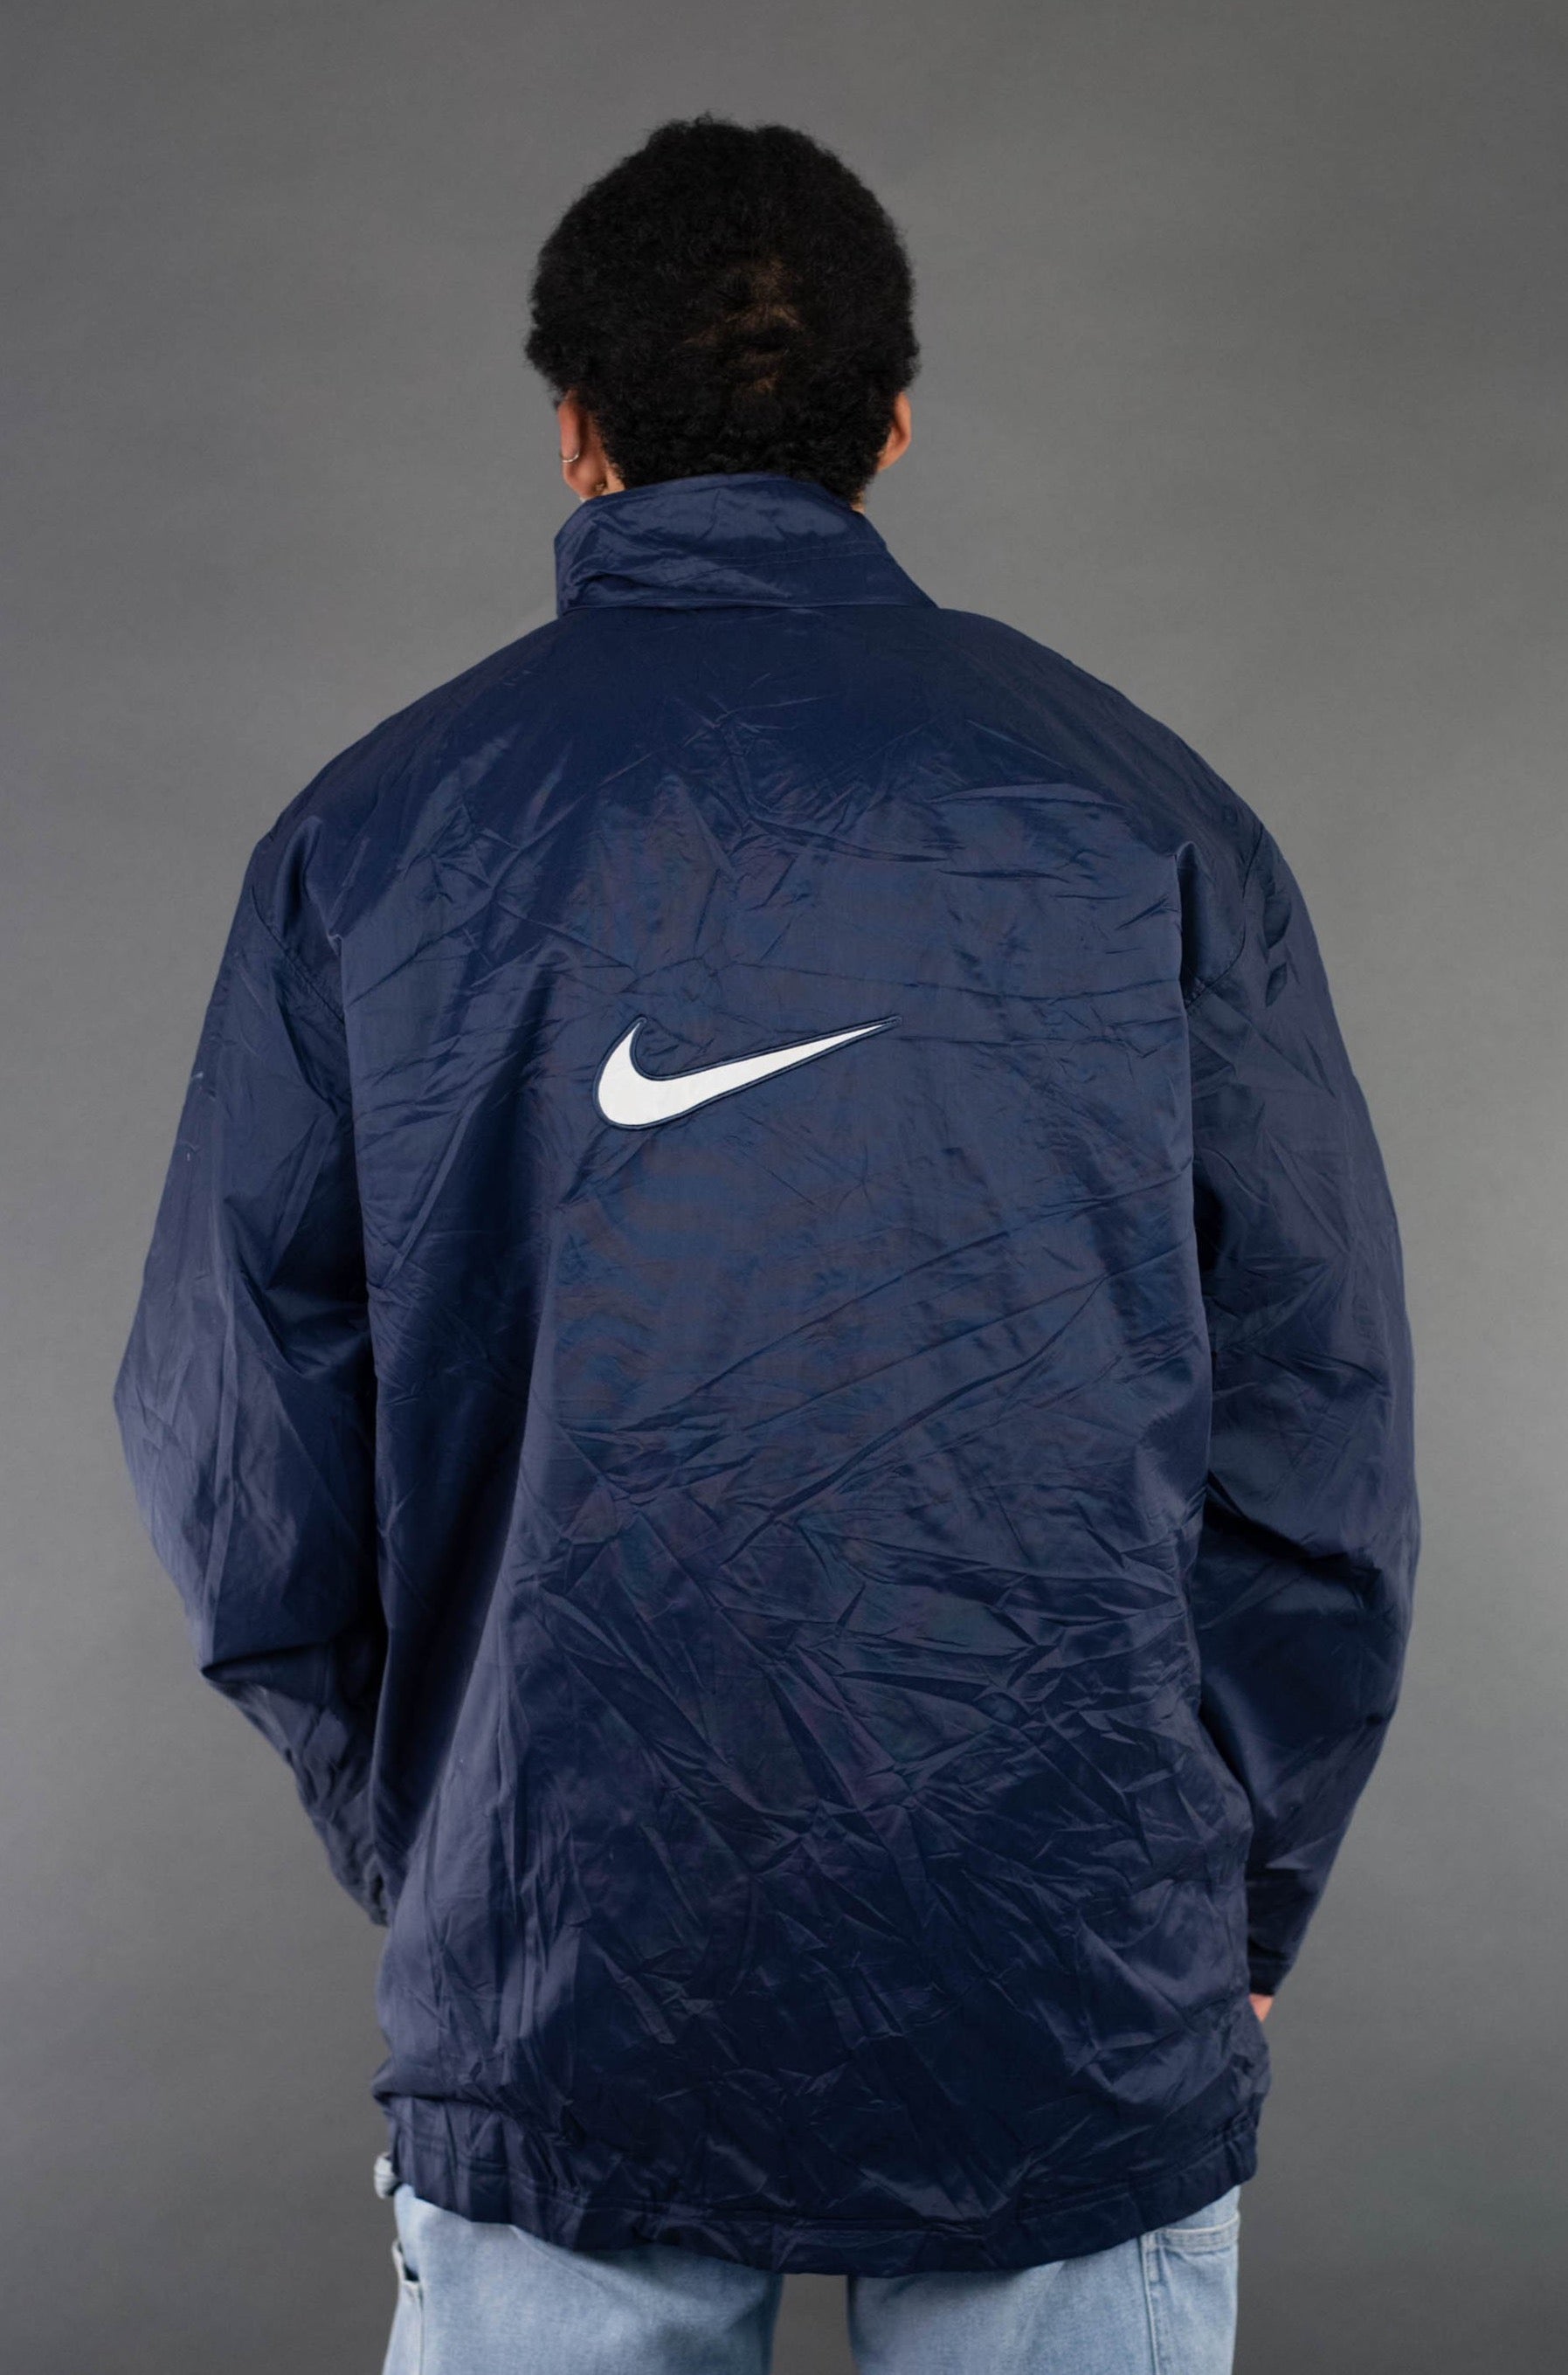 Nike Swoosh Windbreaker Jacket - XL Premium Vintage OLESSTORE